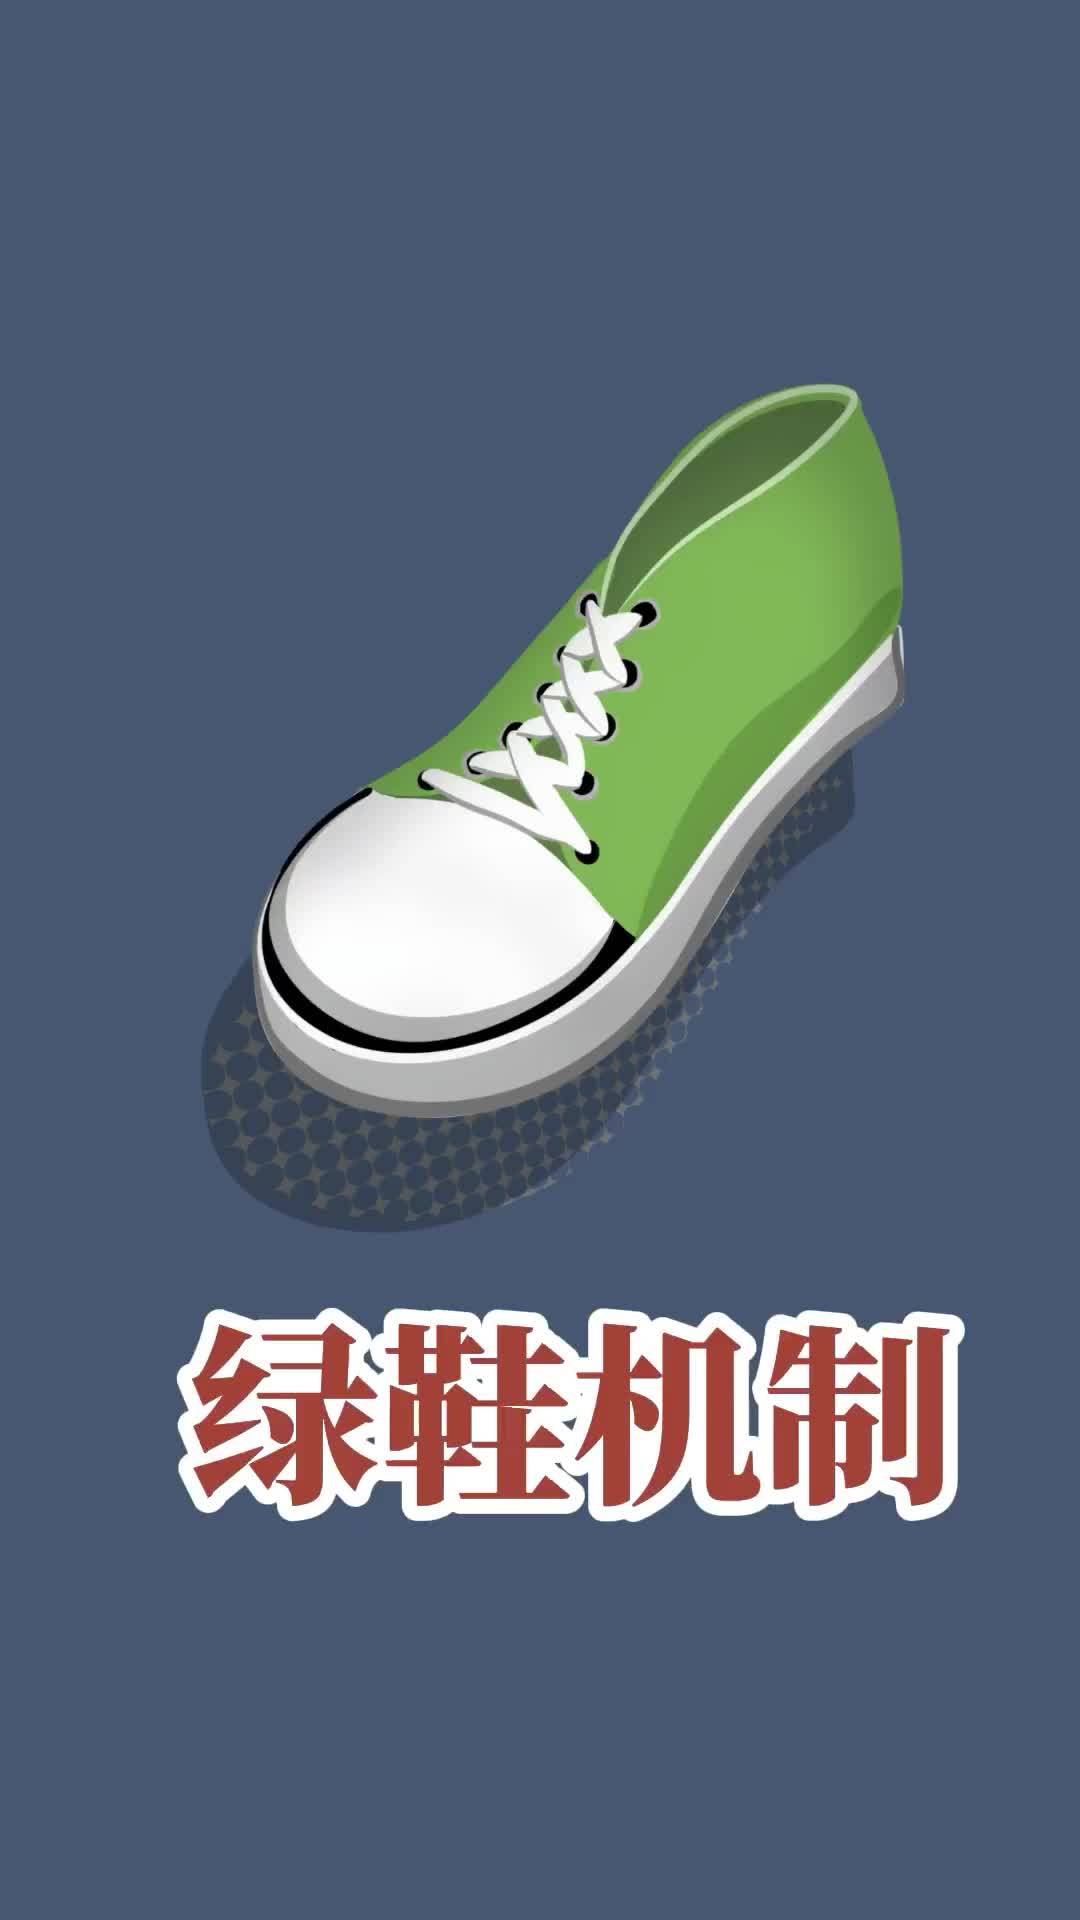 绿鞋机制到期中国电信放大招